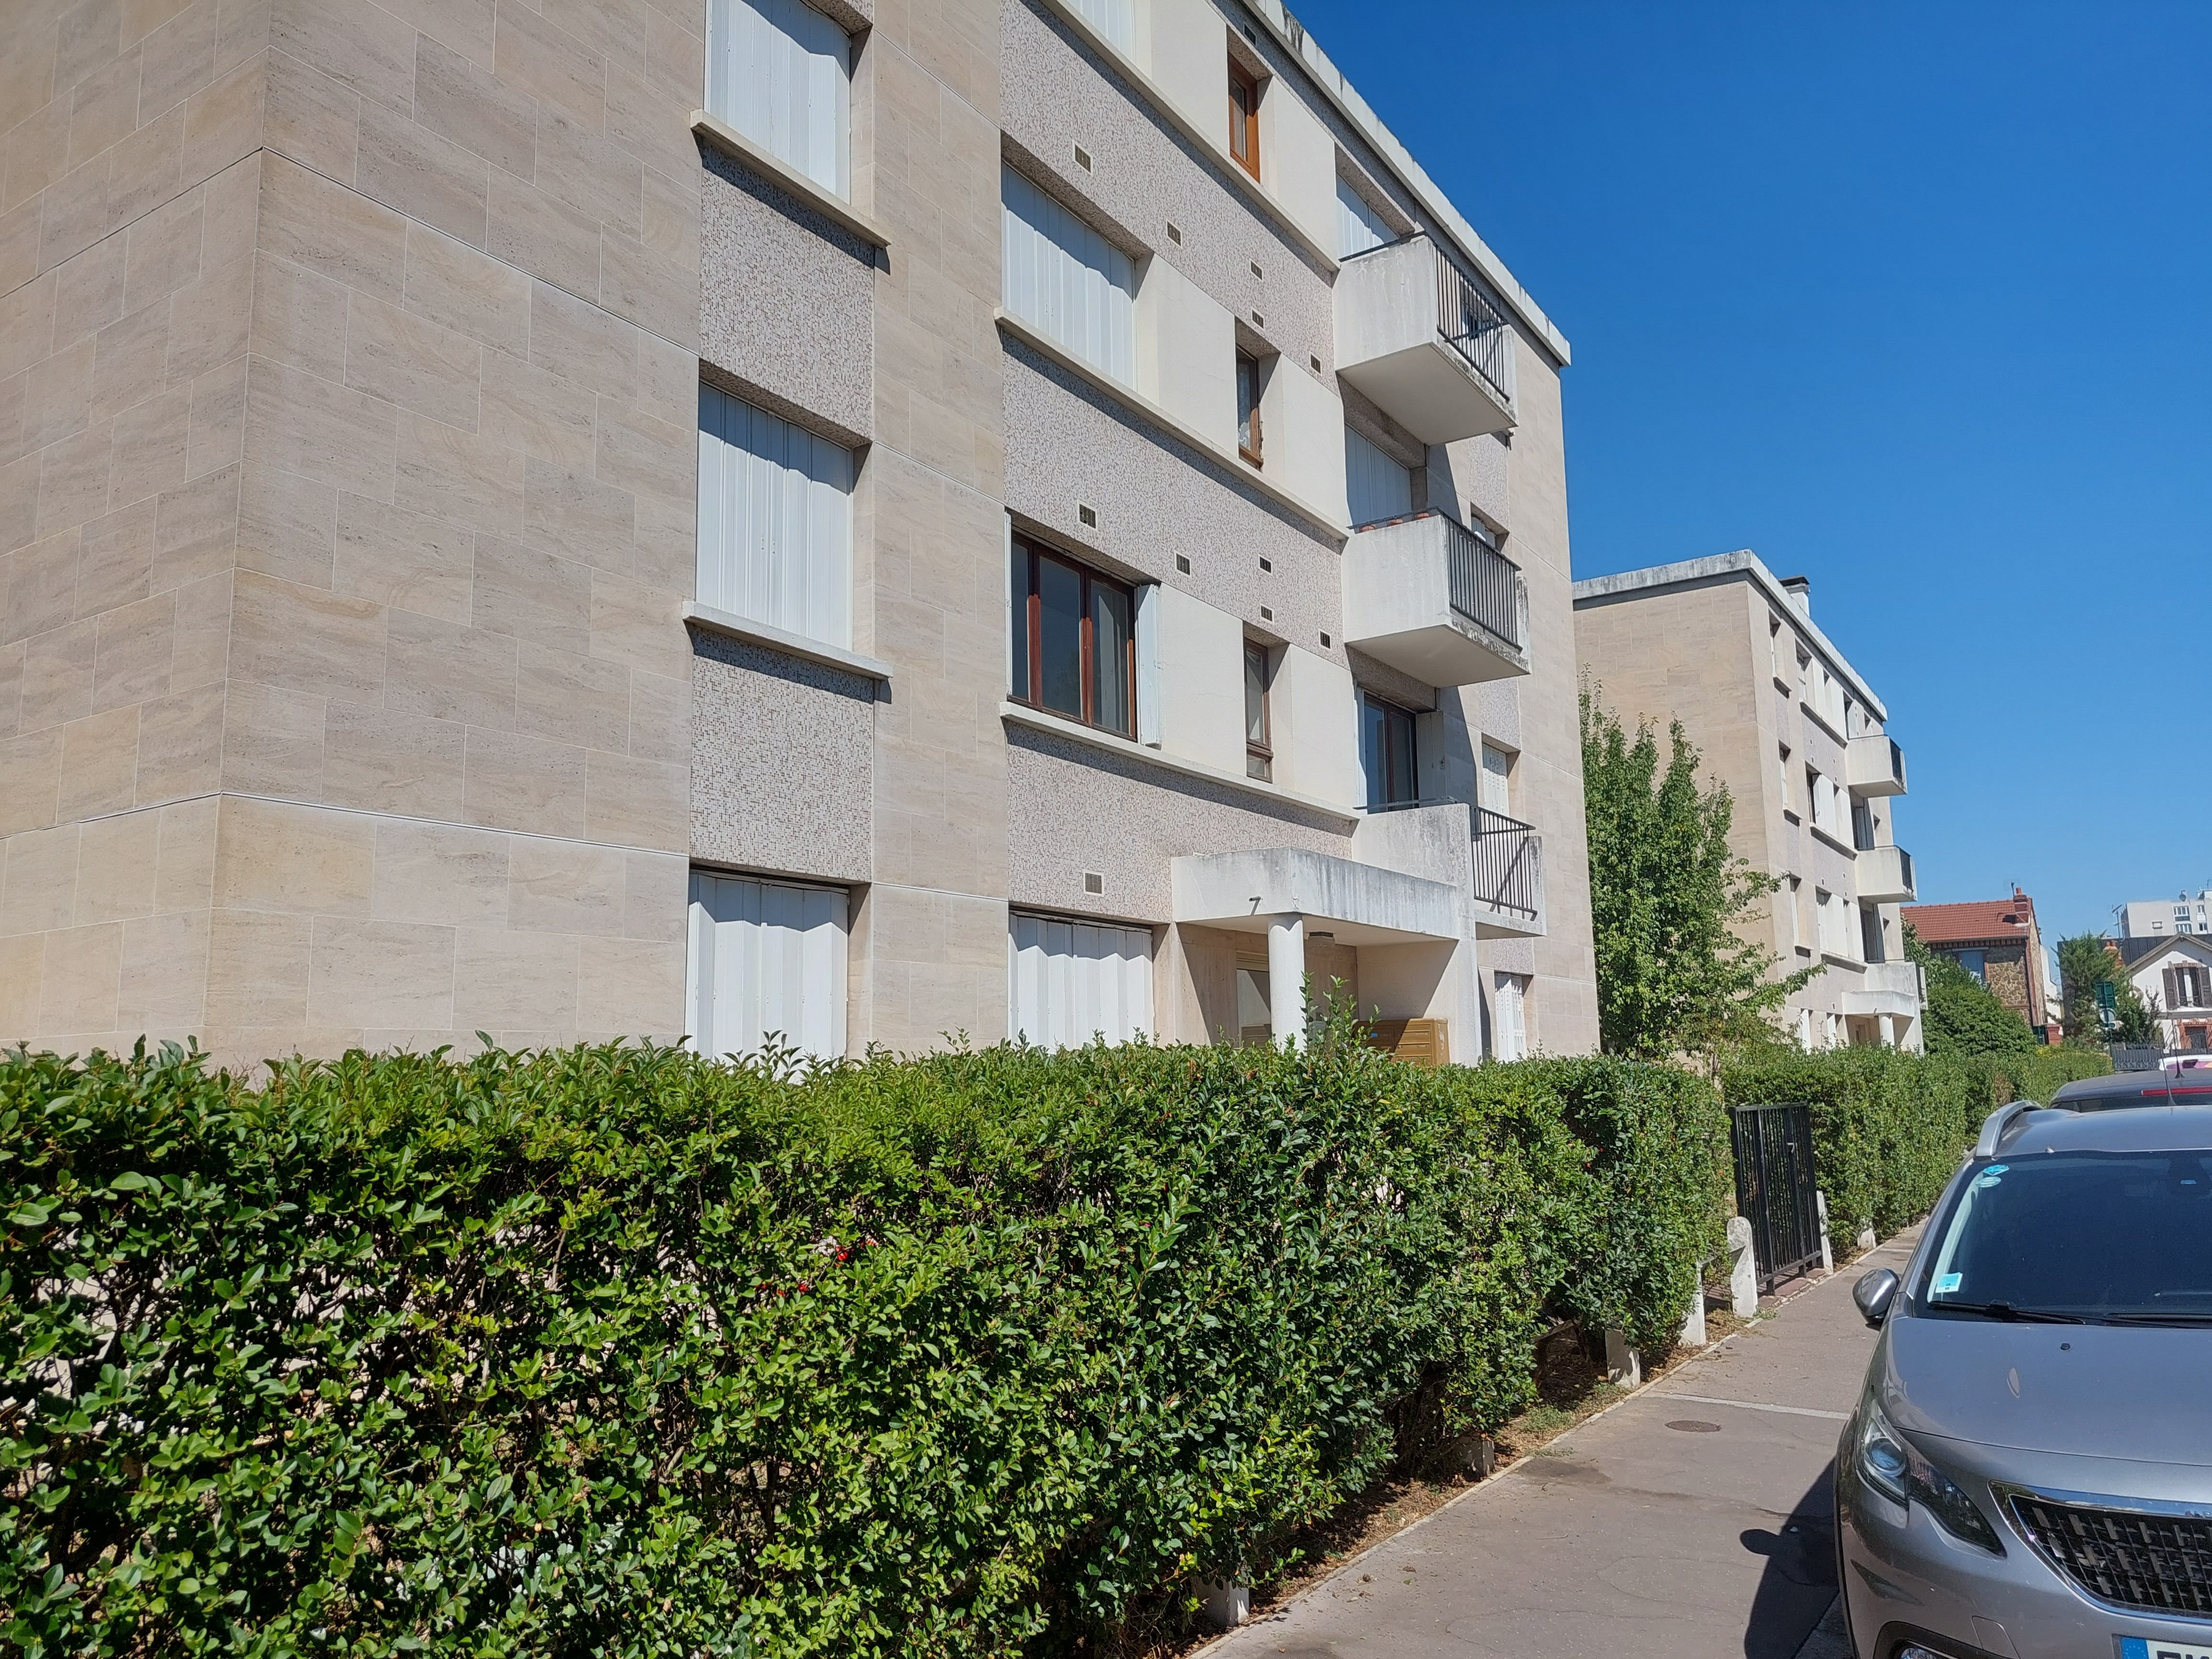 Colombes (Hauts-de-Seine), le 3 août. Retranché dans son appartement situé dans cet immeuble et armé, un homme de 85 ans a été délogé par le Raid ce mardi soir. LP/O.B.